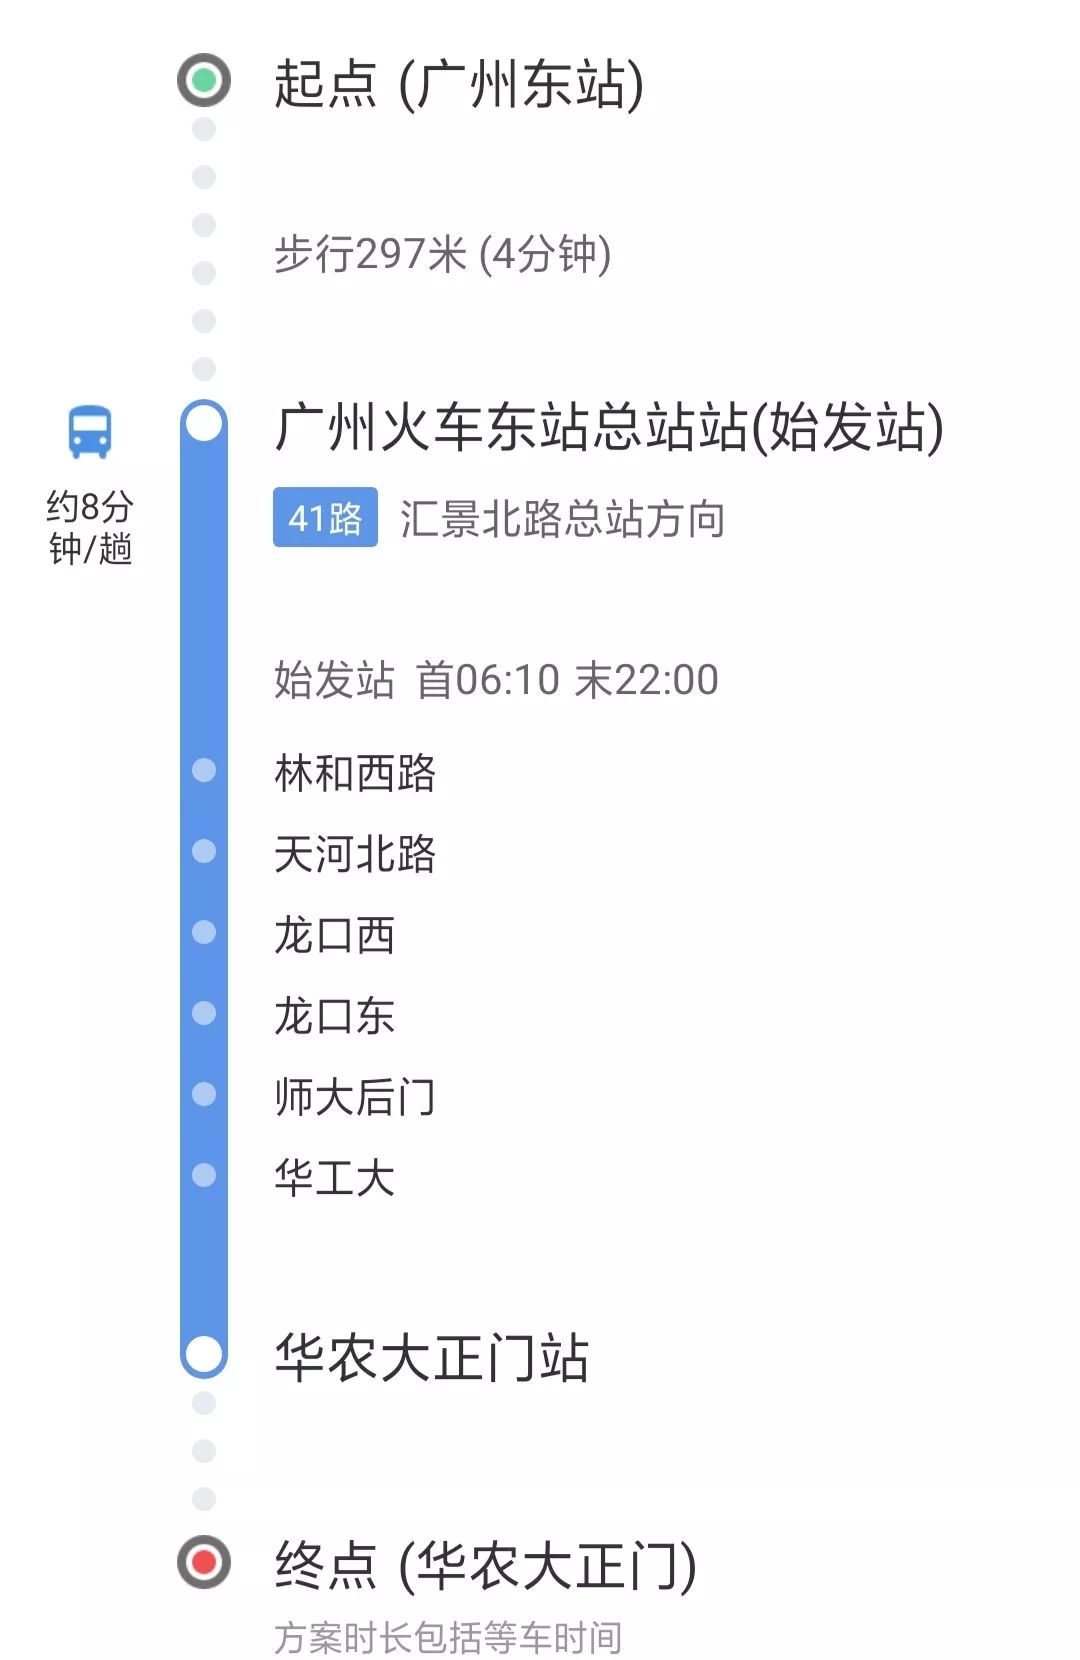 广州541路公交车路线图图片